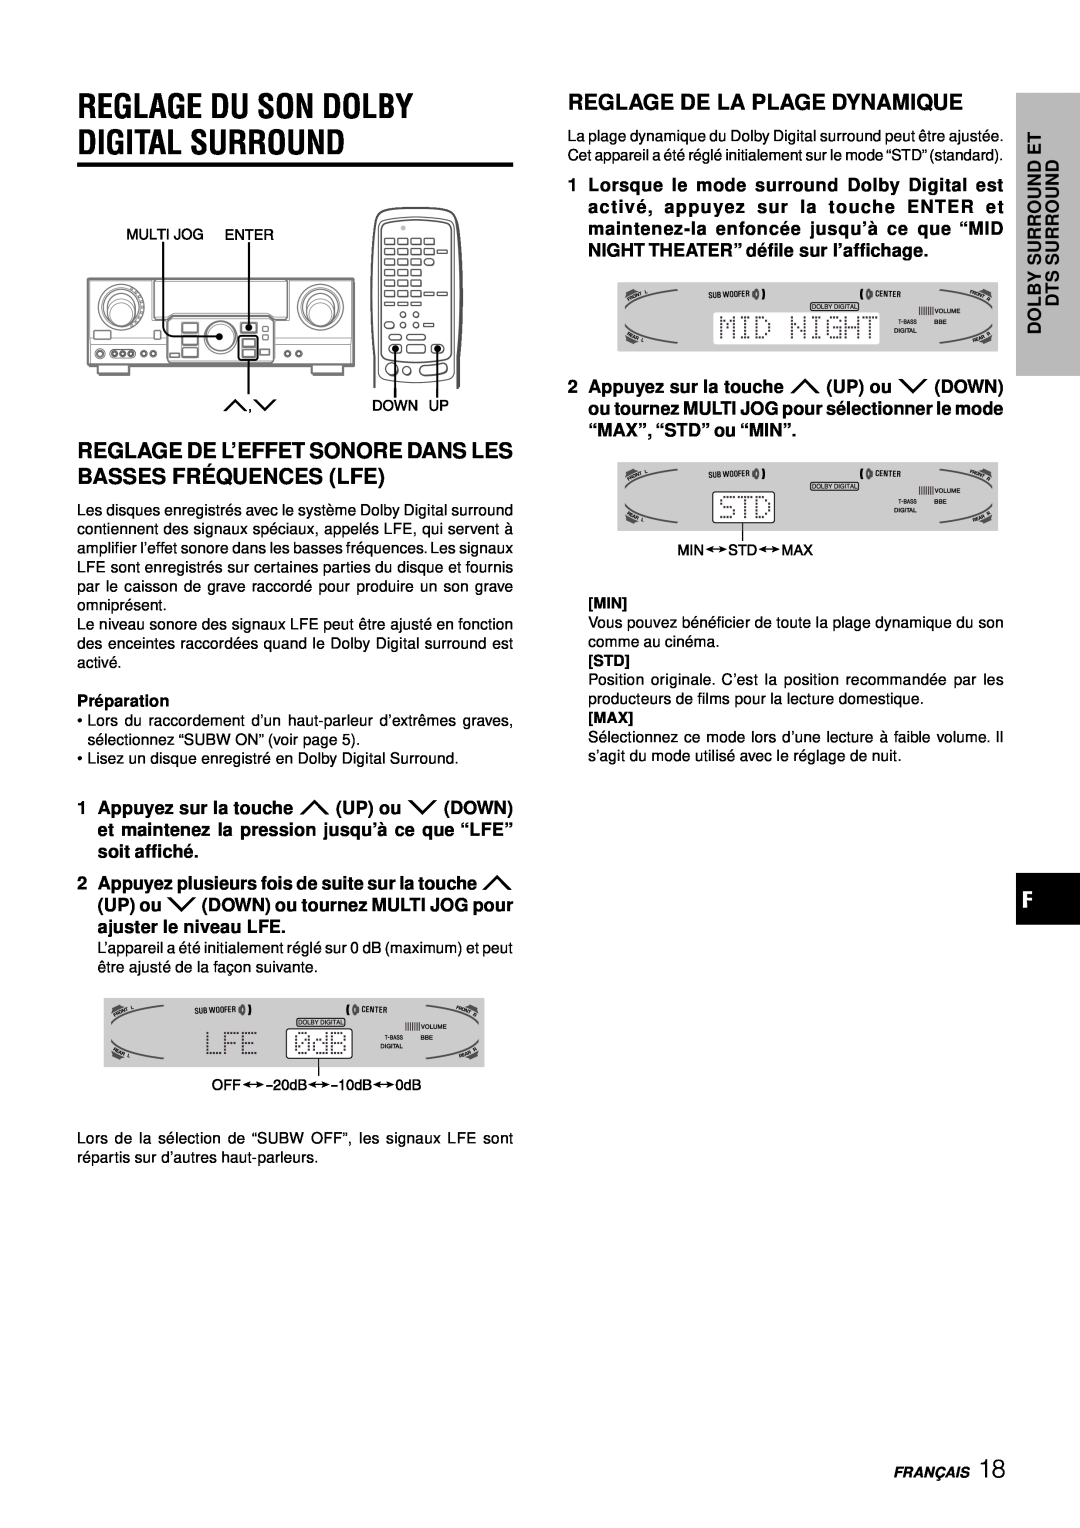 Aiwa AV-D77 manual Reglage De La Plage Dynamique, Reglage Du Son Dolby Digital Surround, ajuster le niveau LFE 